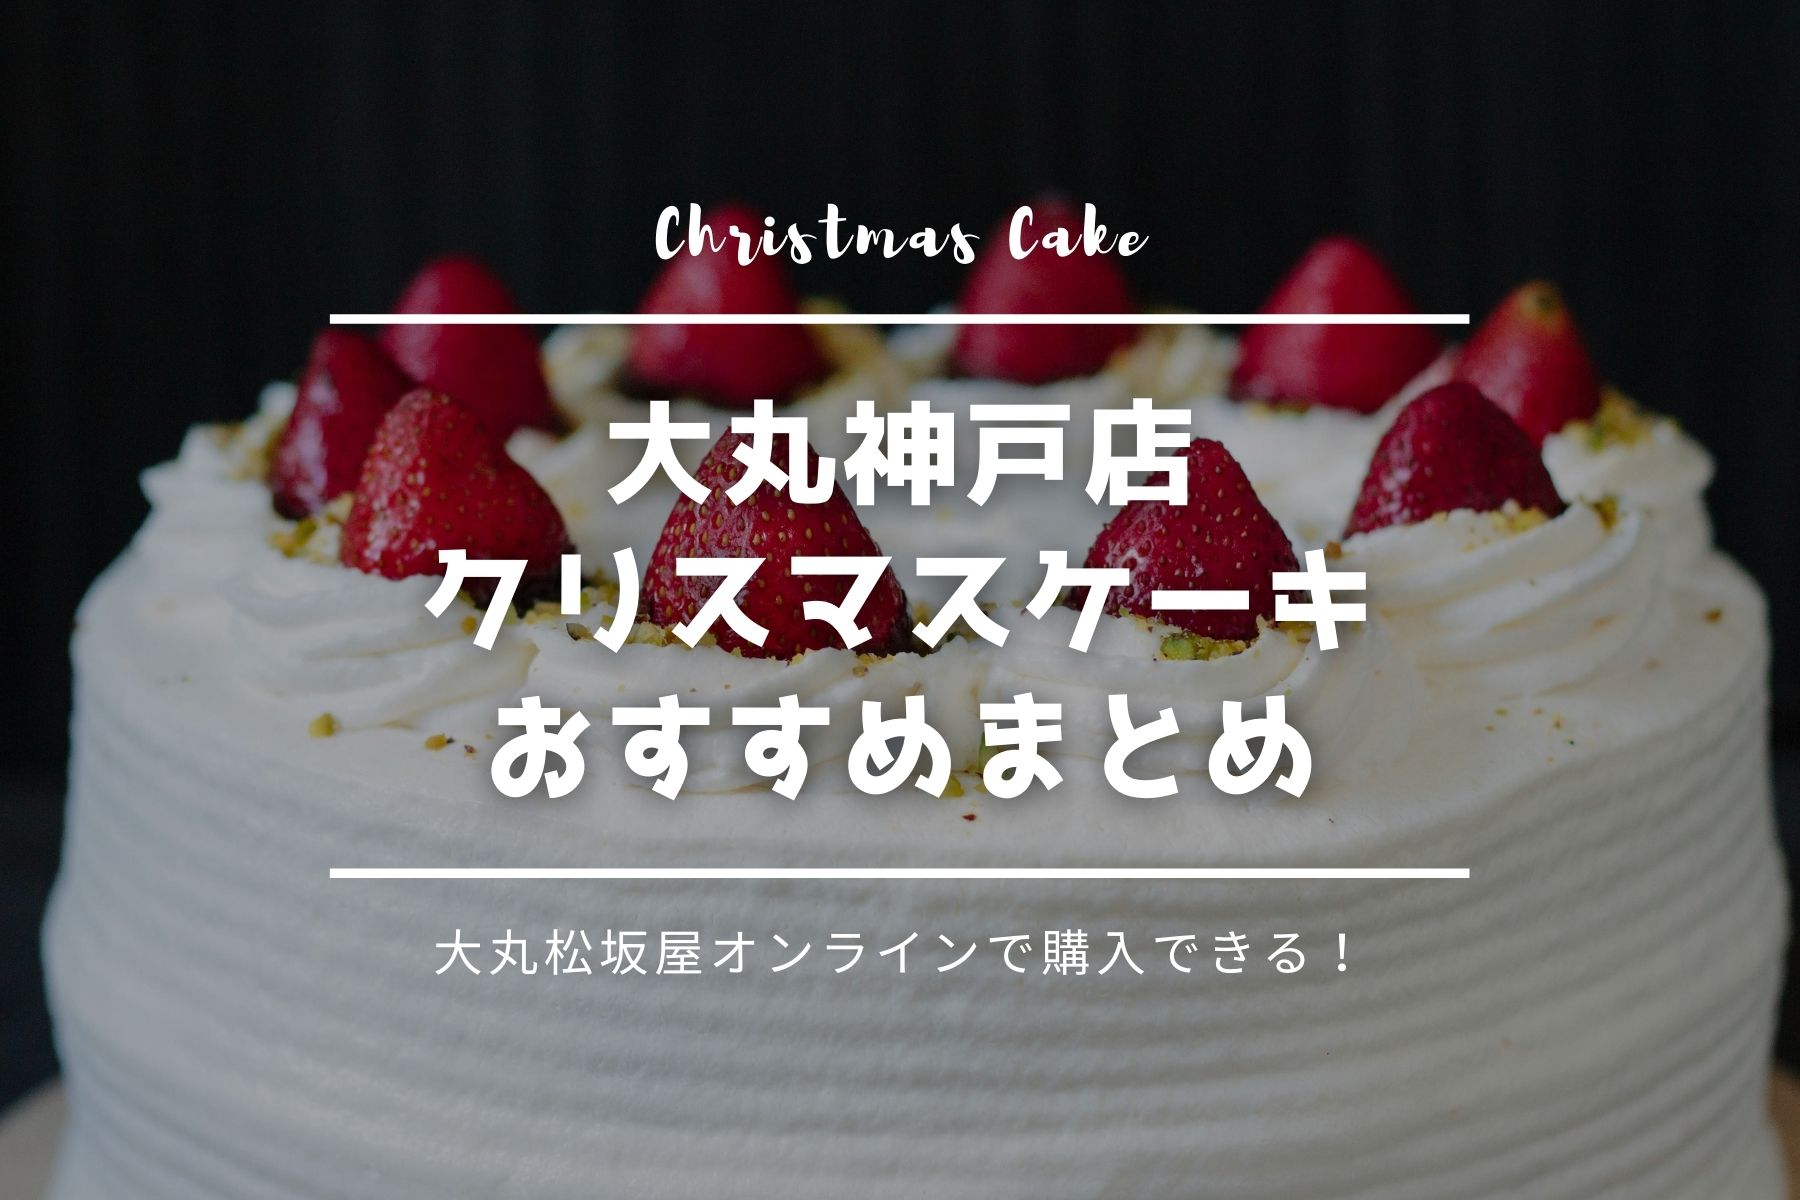 クリスマスケーキ 大丸神戸店のおすすめ23選 神戸の人気店が多数